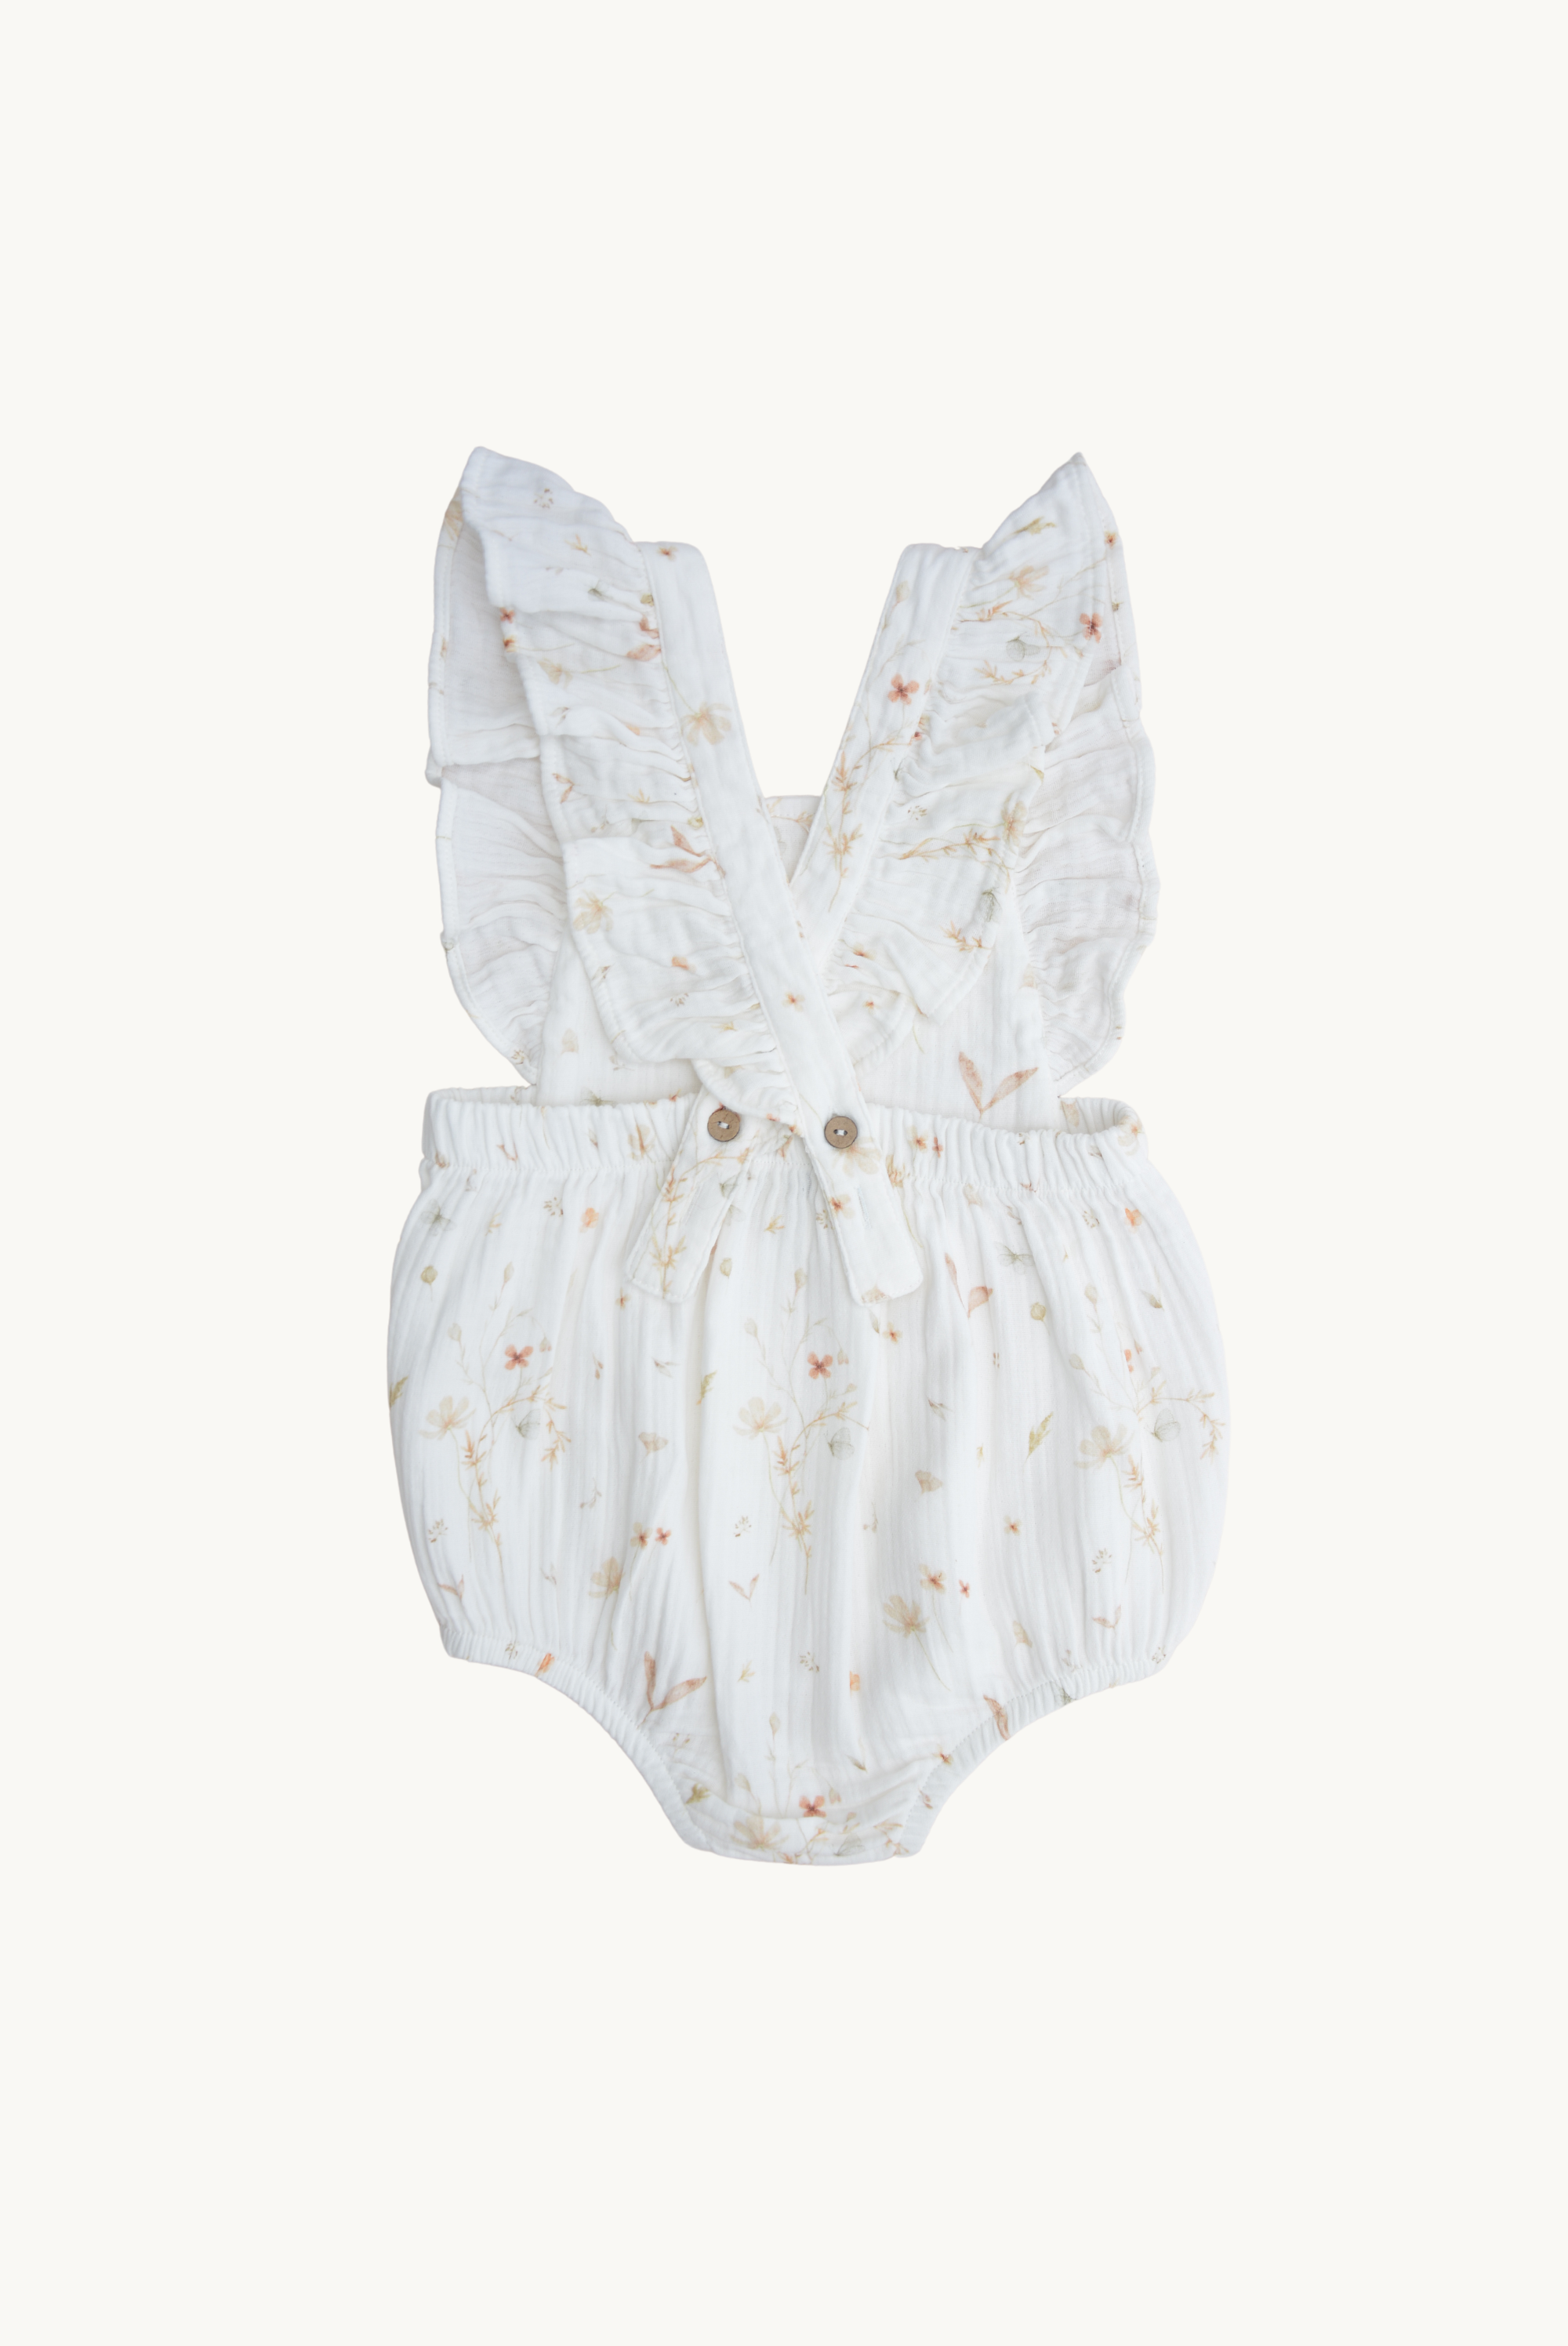 LUNA Romper - Weiß mit Blumendruck * Baby-Musselin-Strampler aus 100% Baumwolle